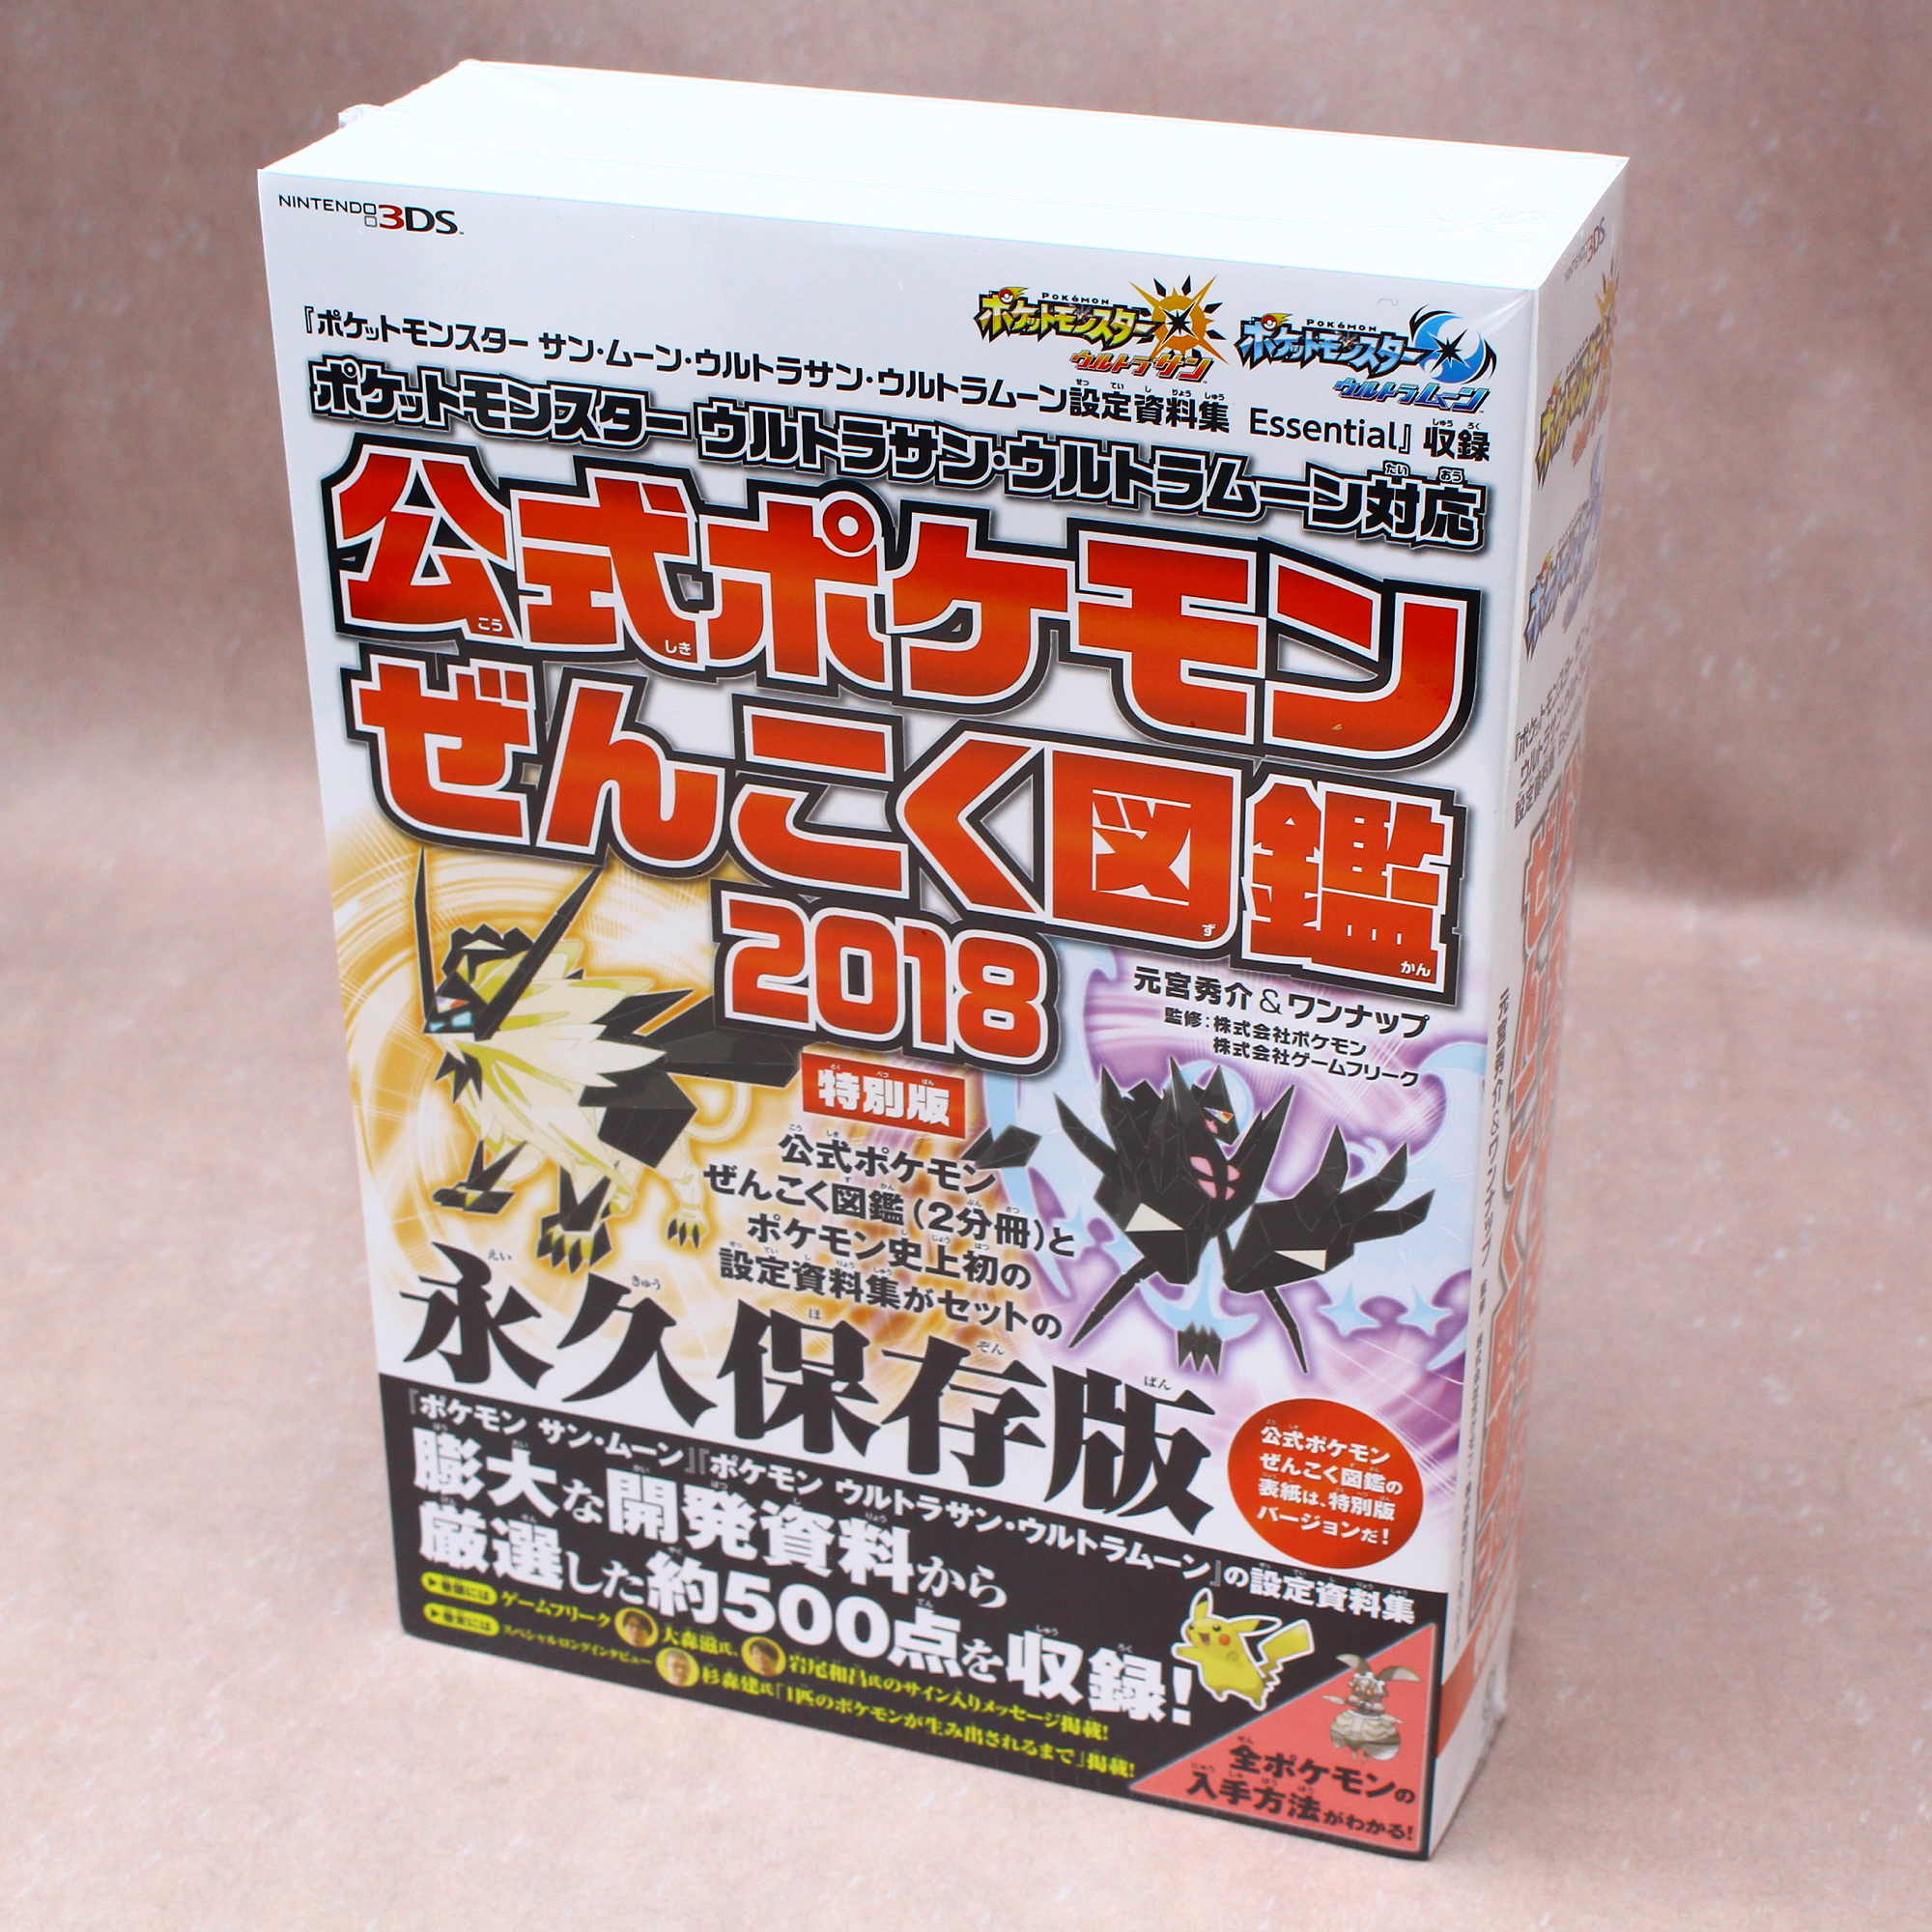 Pokemon Collection Recorded Ultra Sun Moon Zenkoku 2018 Japanese Official Book 